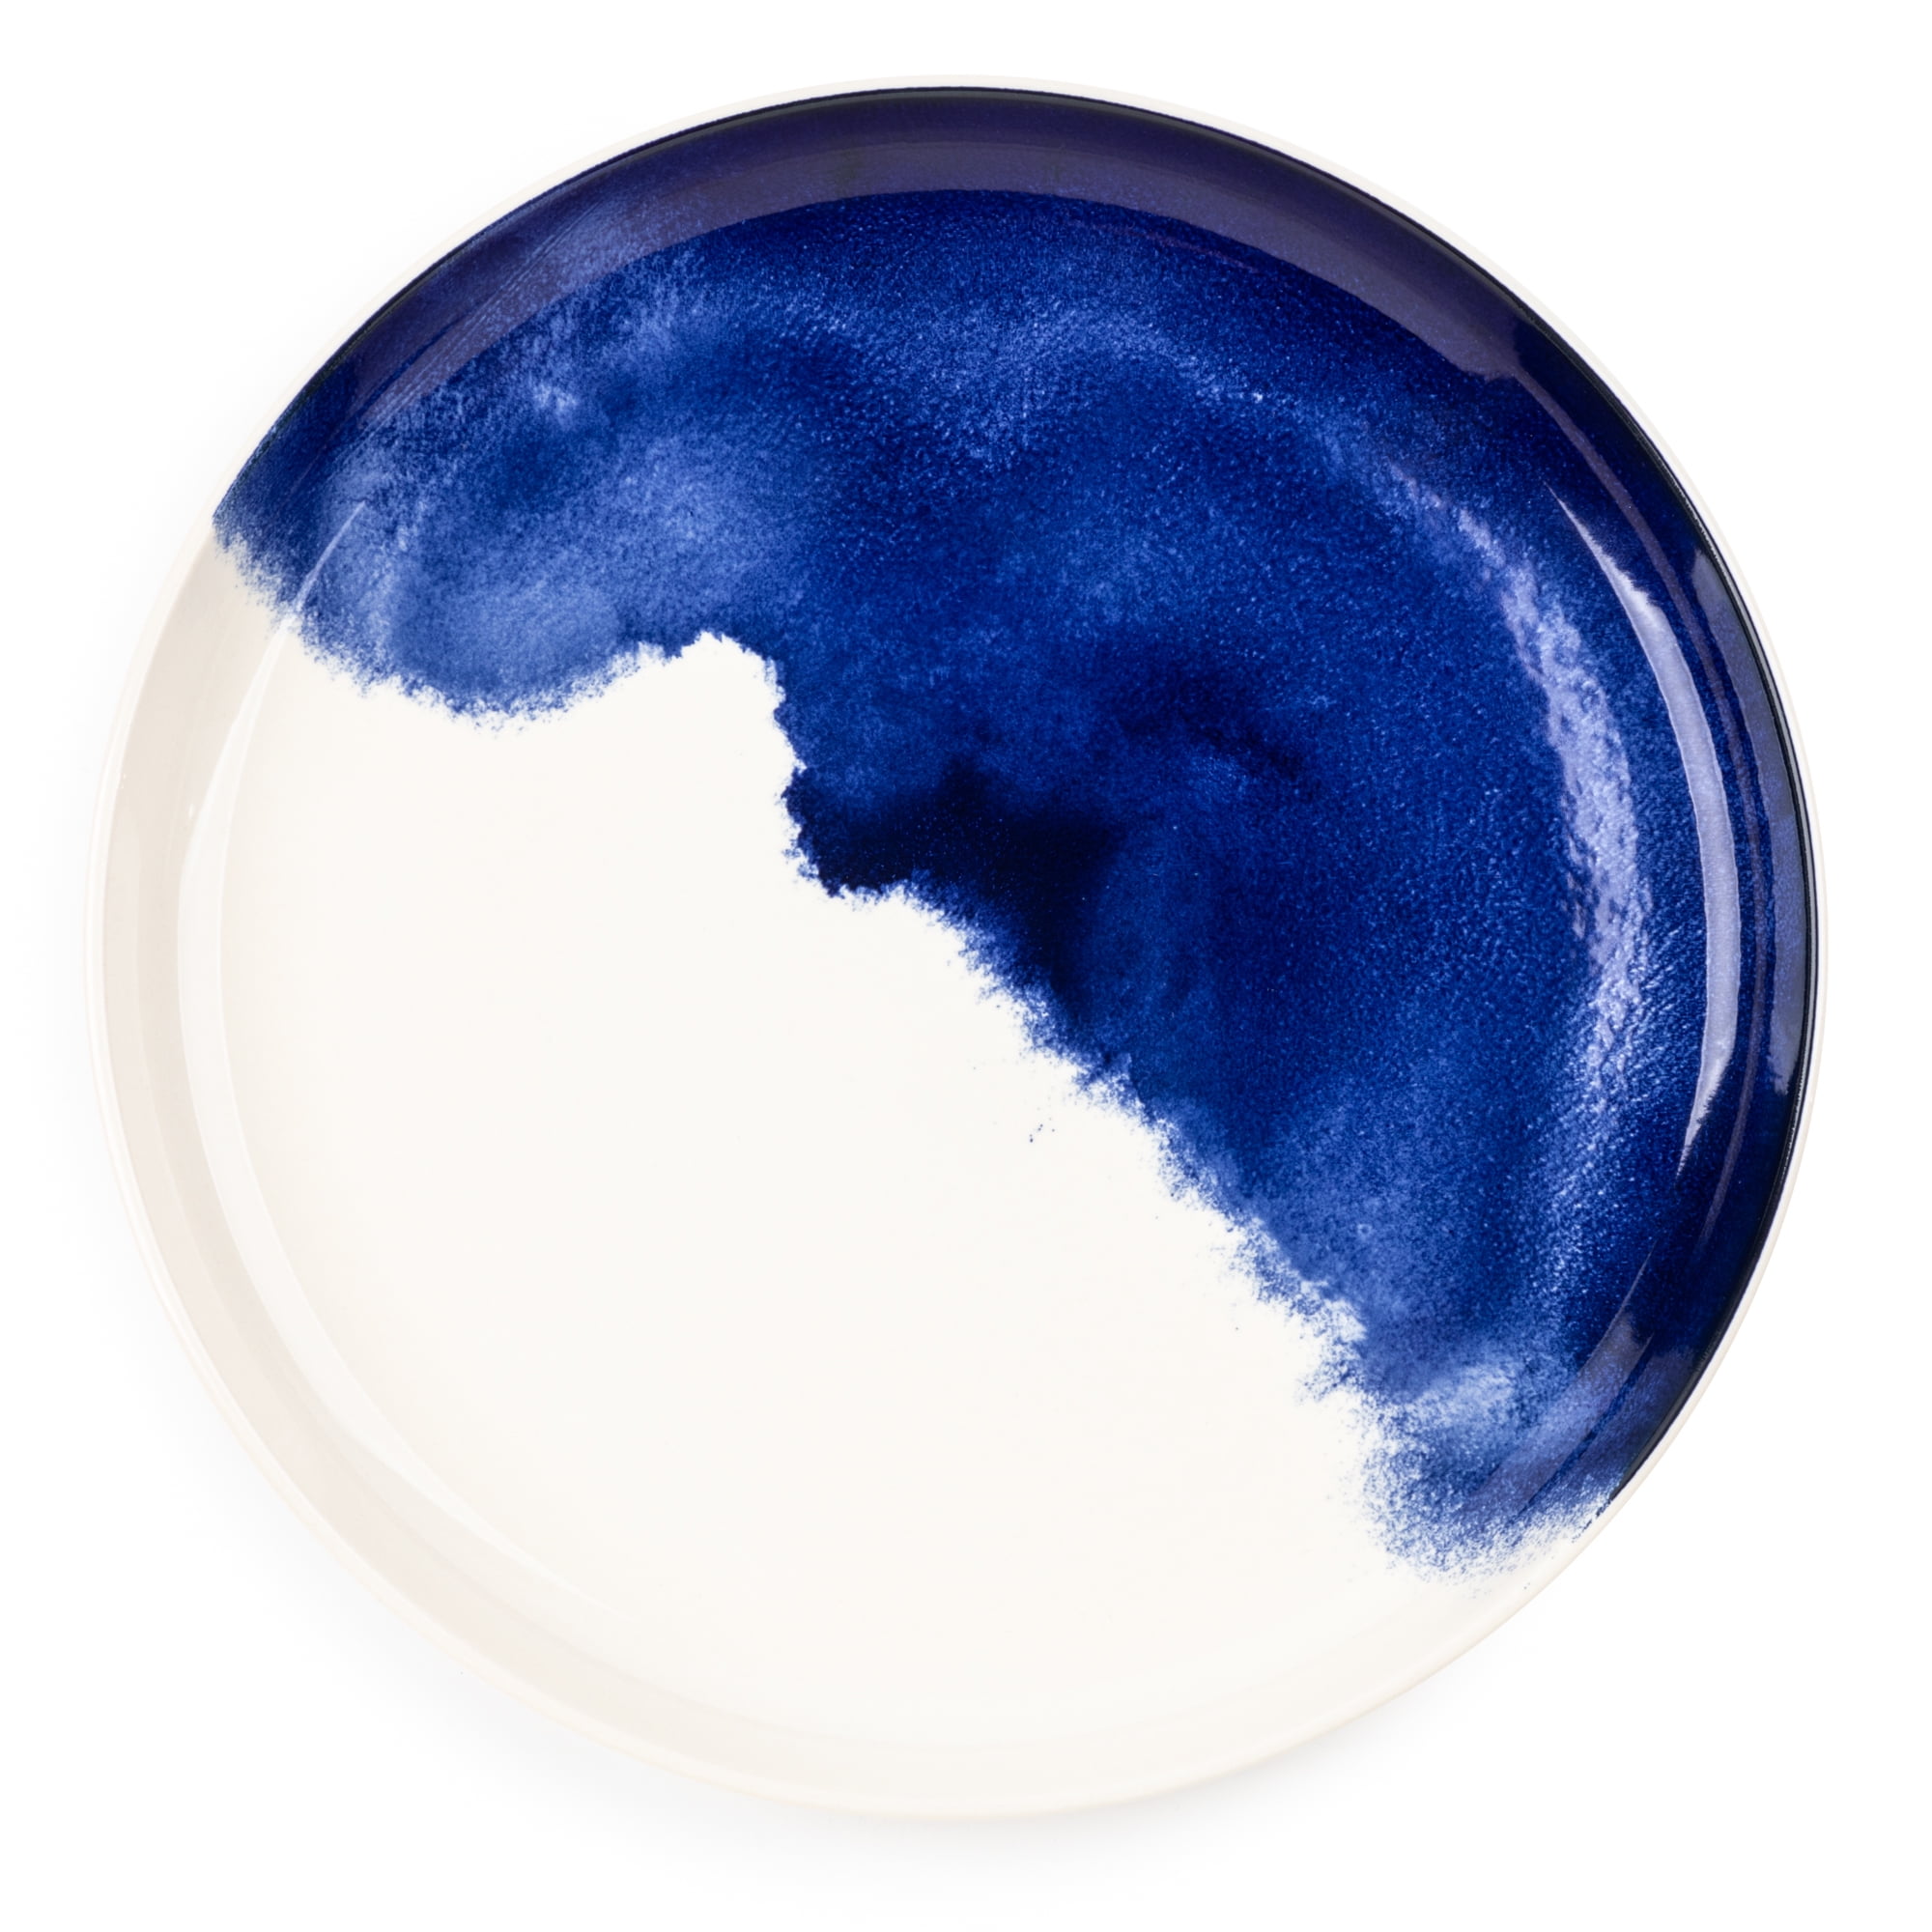 Thyme & Table Dinnerware Black/Blue Medallion Stoneware, 12 Piece Set –  karensdreamhouse